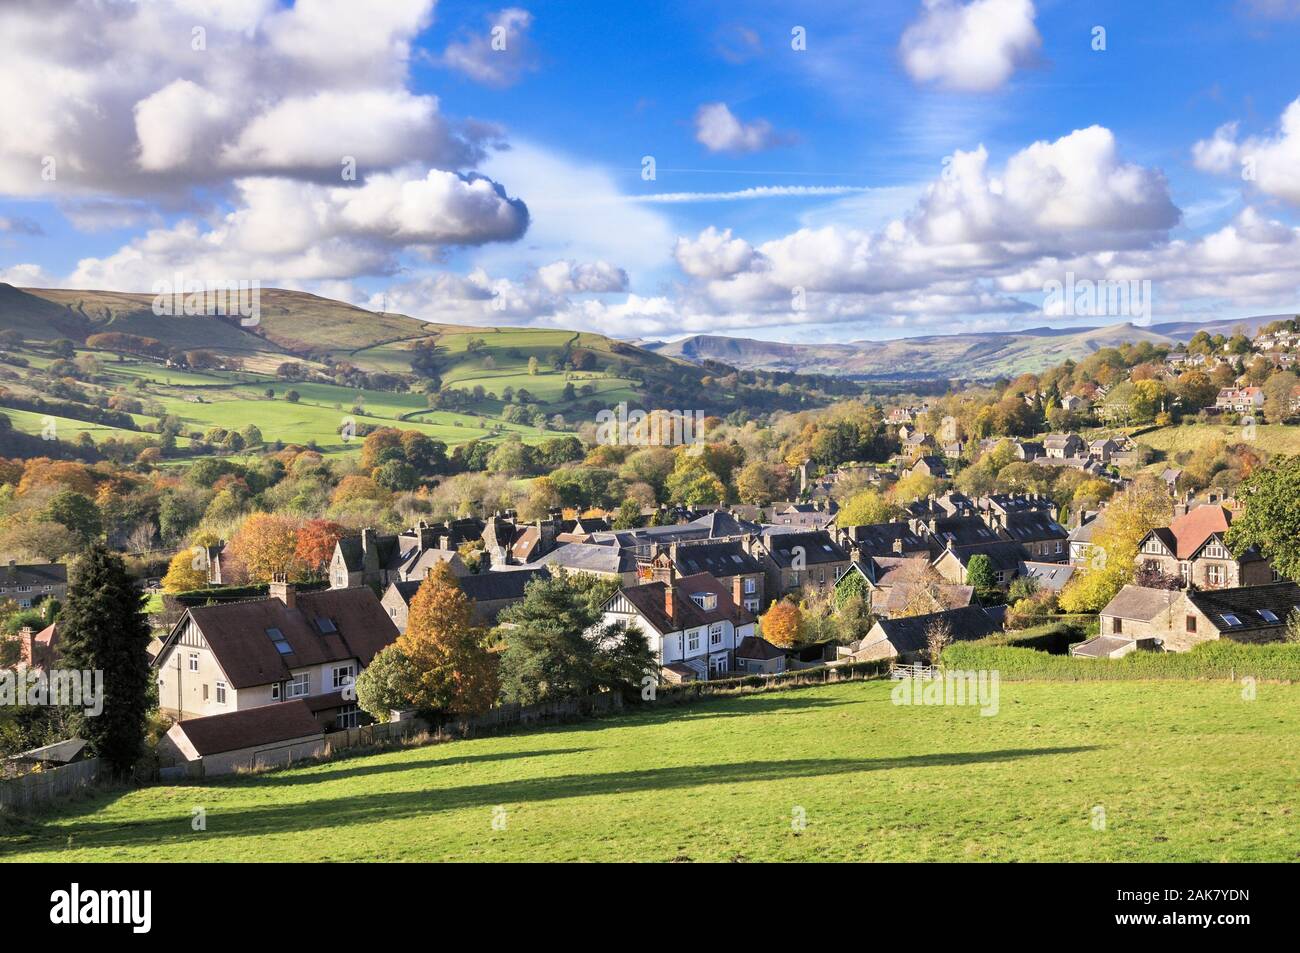 Un beau paysage pittoresque vue du village de Hathersage et espoir Vallée vers Mam Tor et perdre Hill, parc national de Peak District, England, UK Banque D'Images